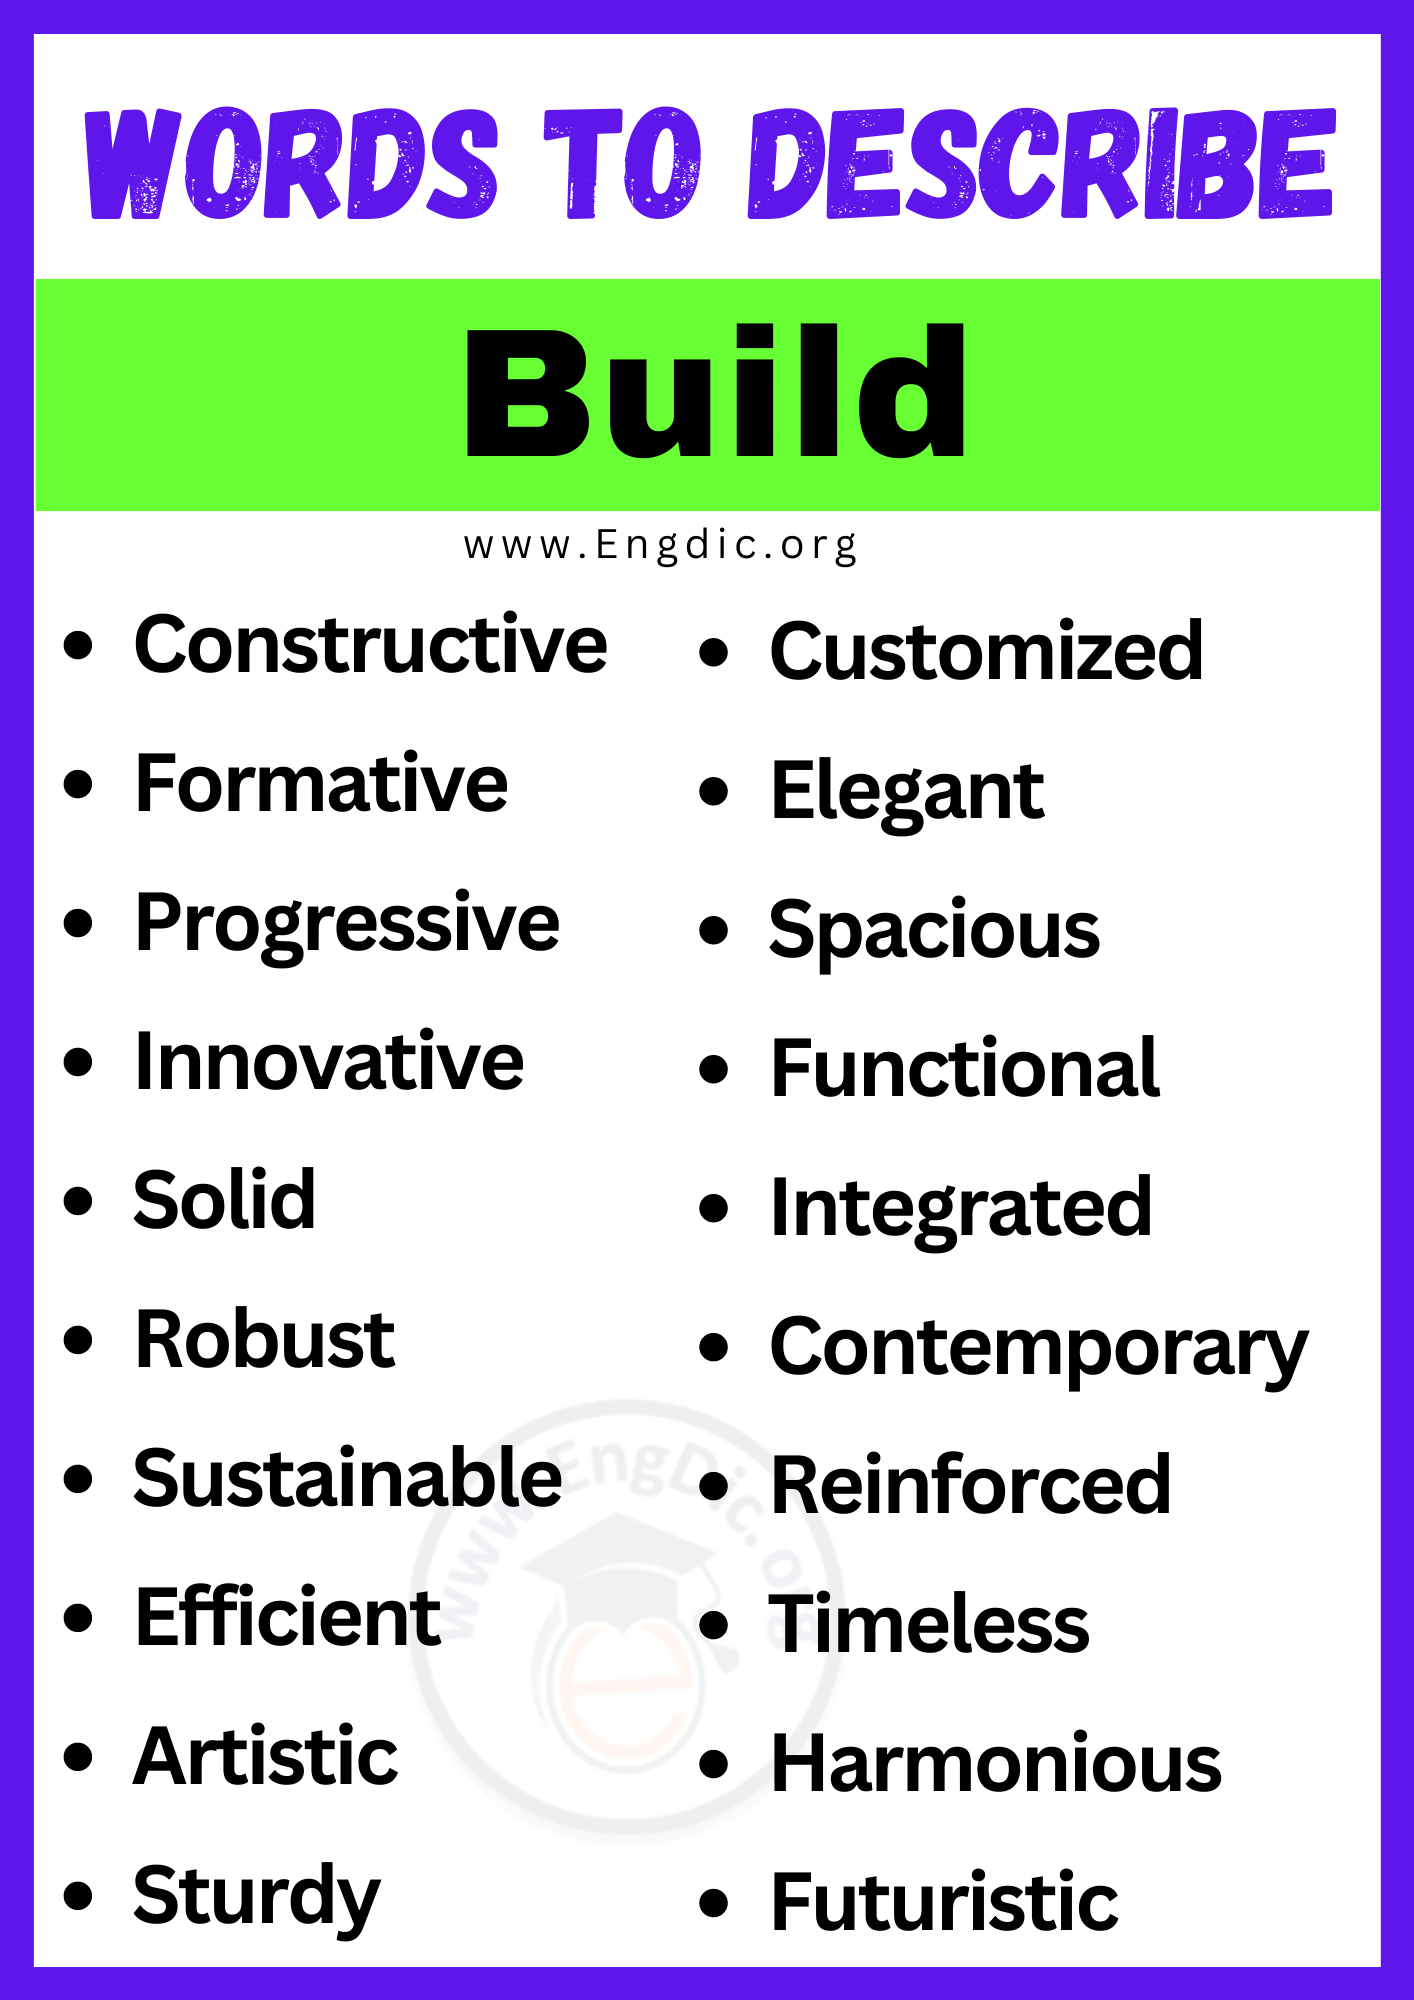 Words to Describe Build